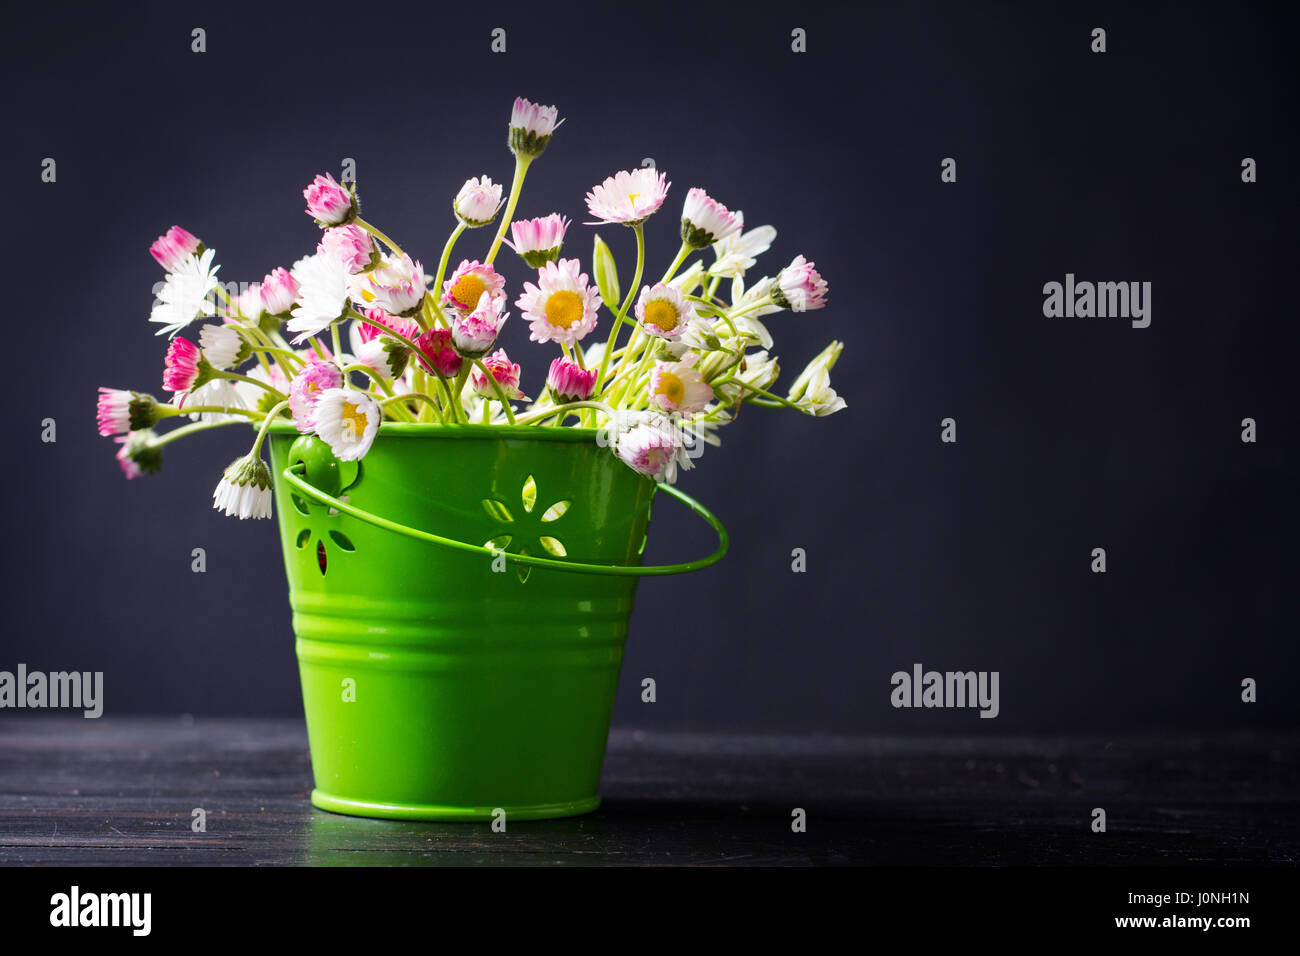 Blumen-Gänseblümchen in einem grünen Topf auf schwarzem Hintergrund Stockfoto